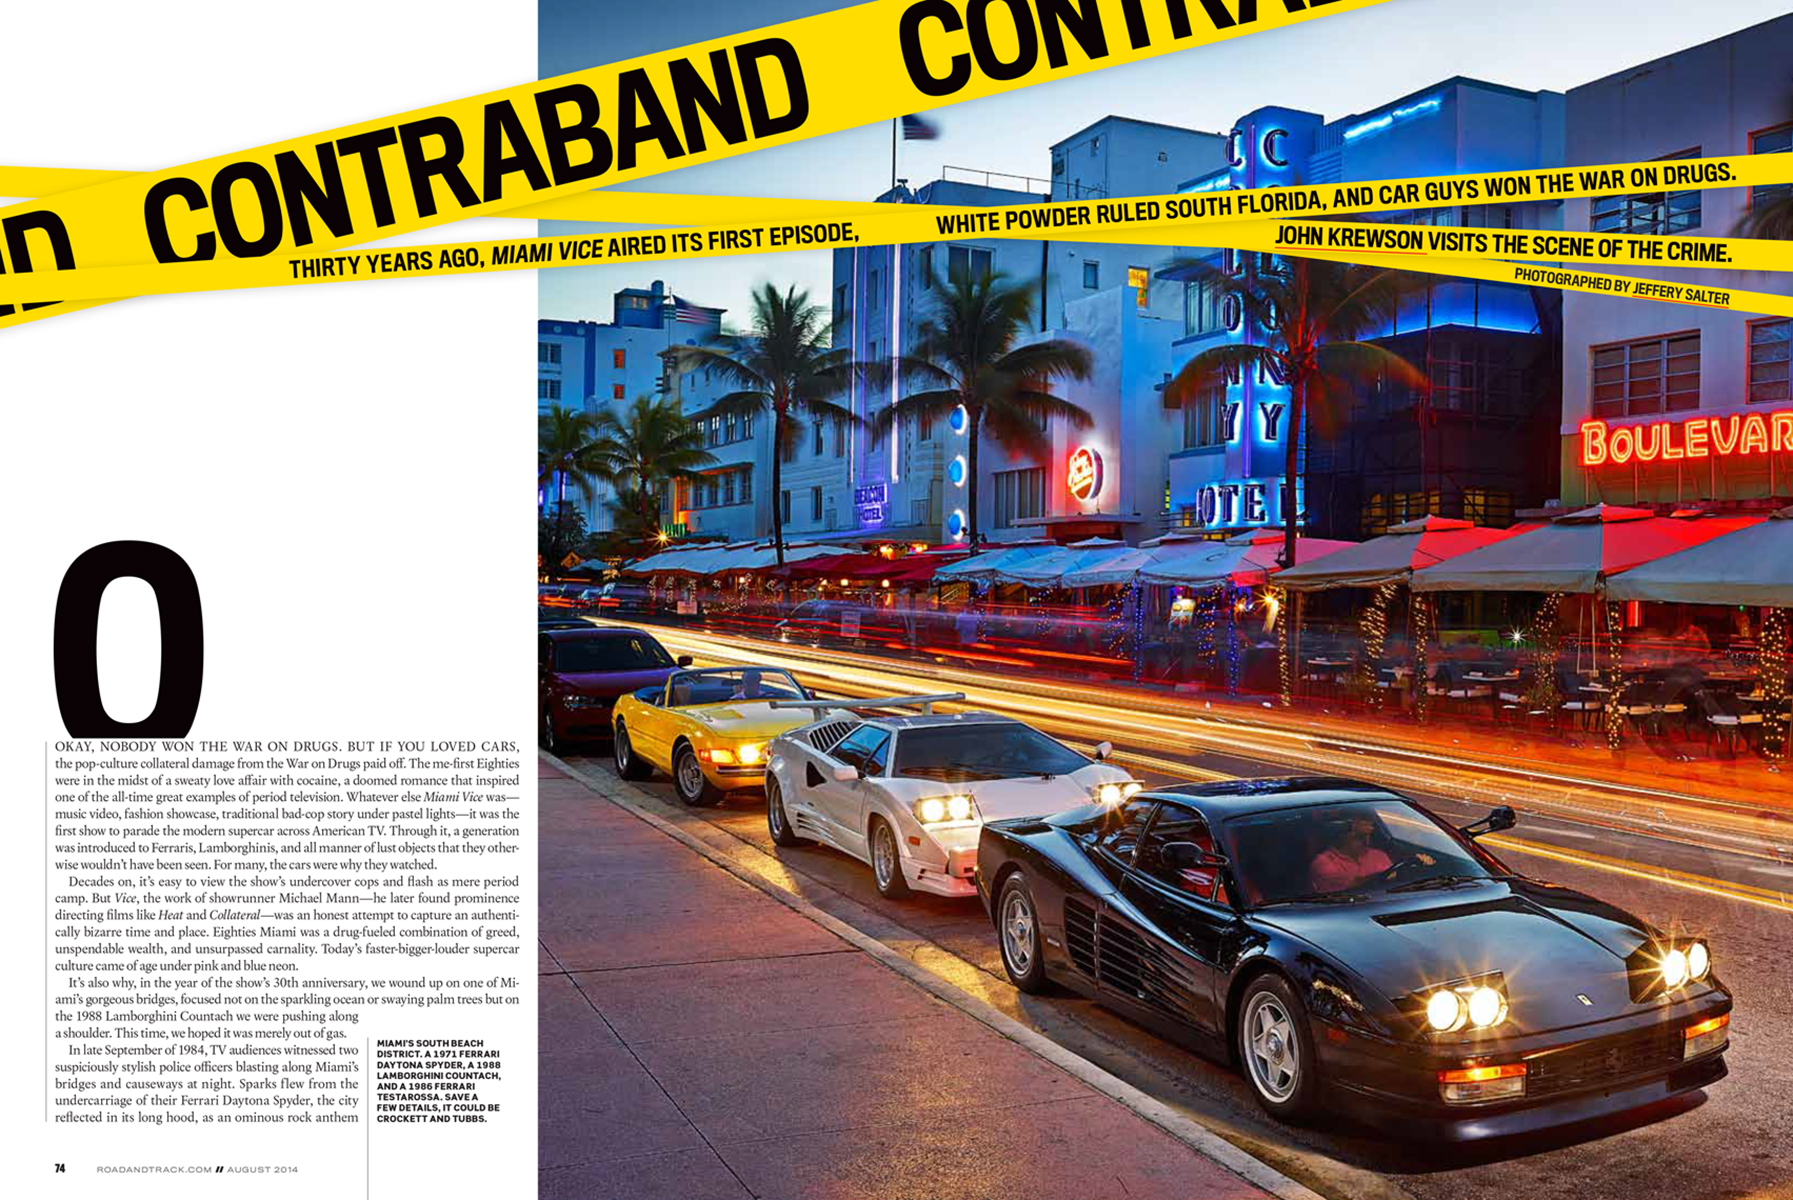 Miami Vice |  Cars  | Miami  photographer Jeffery Salter